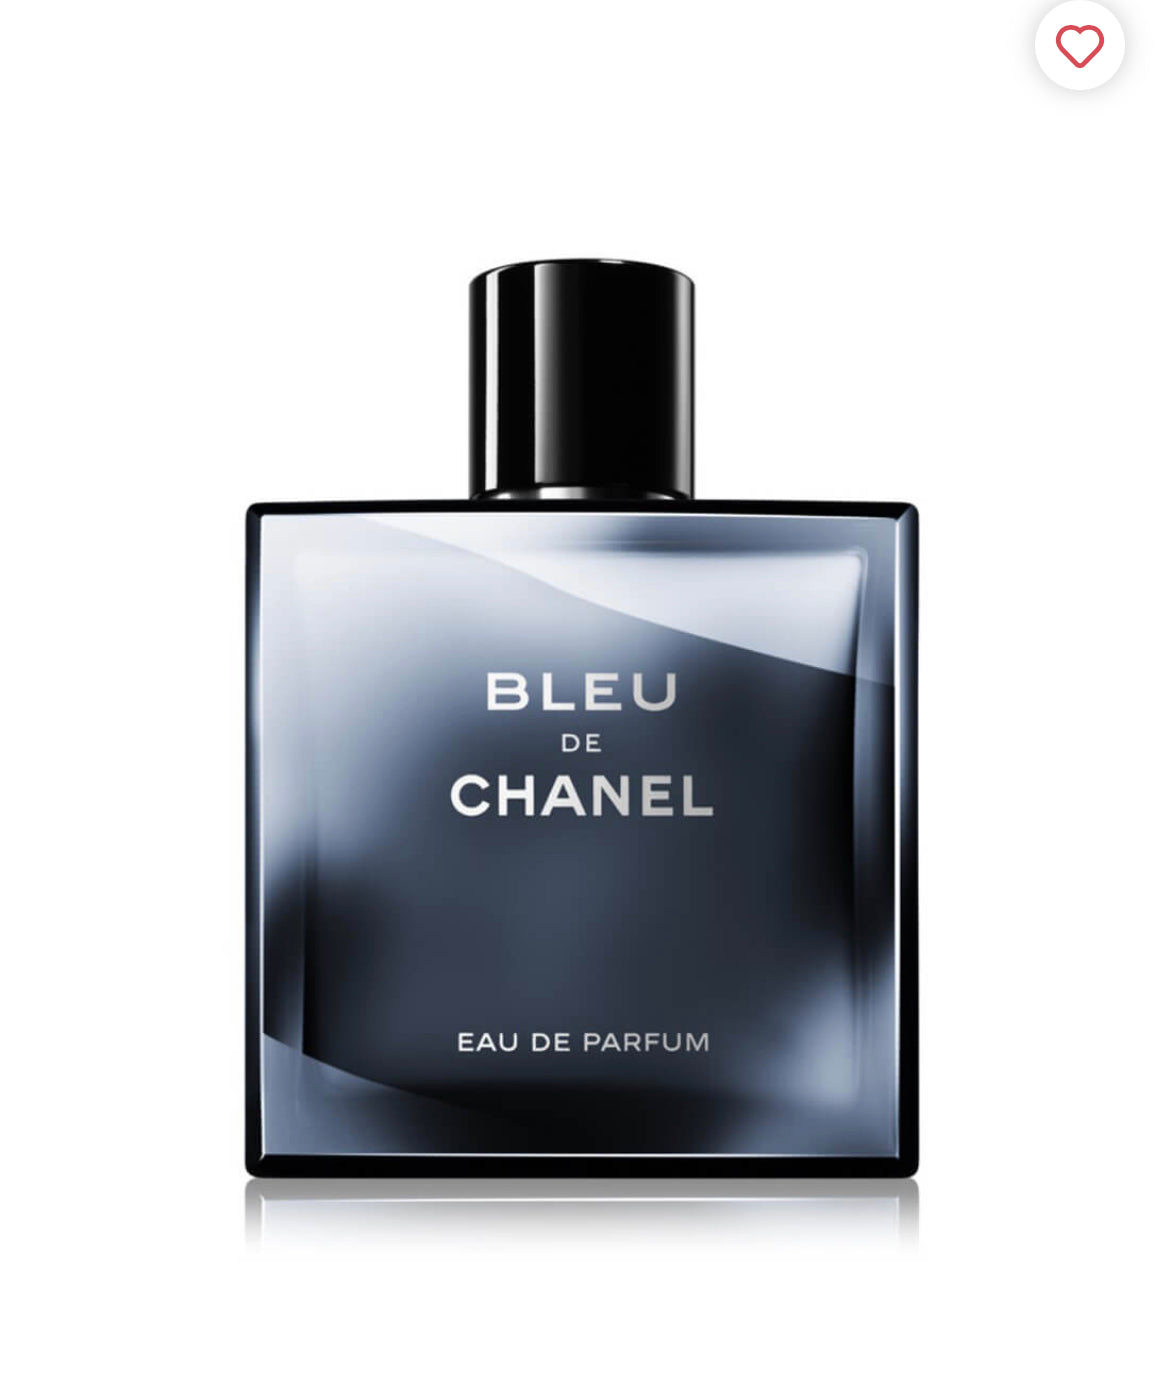 Perfume by KC - Bleu de Chanel edp 100ml. A woody